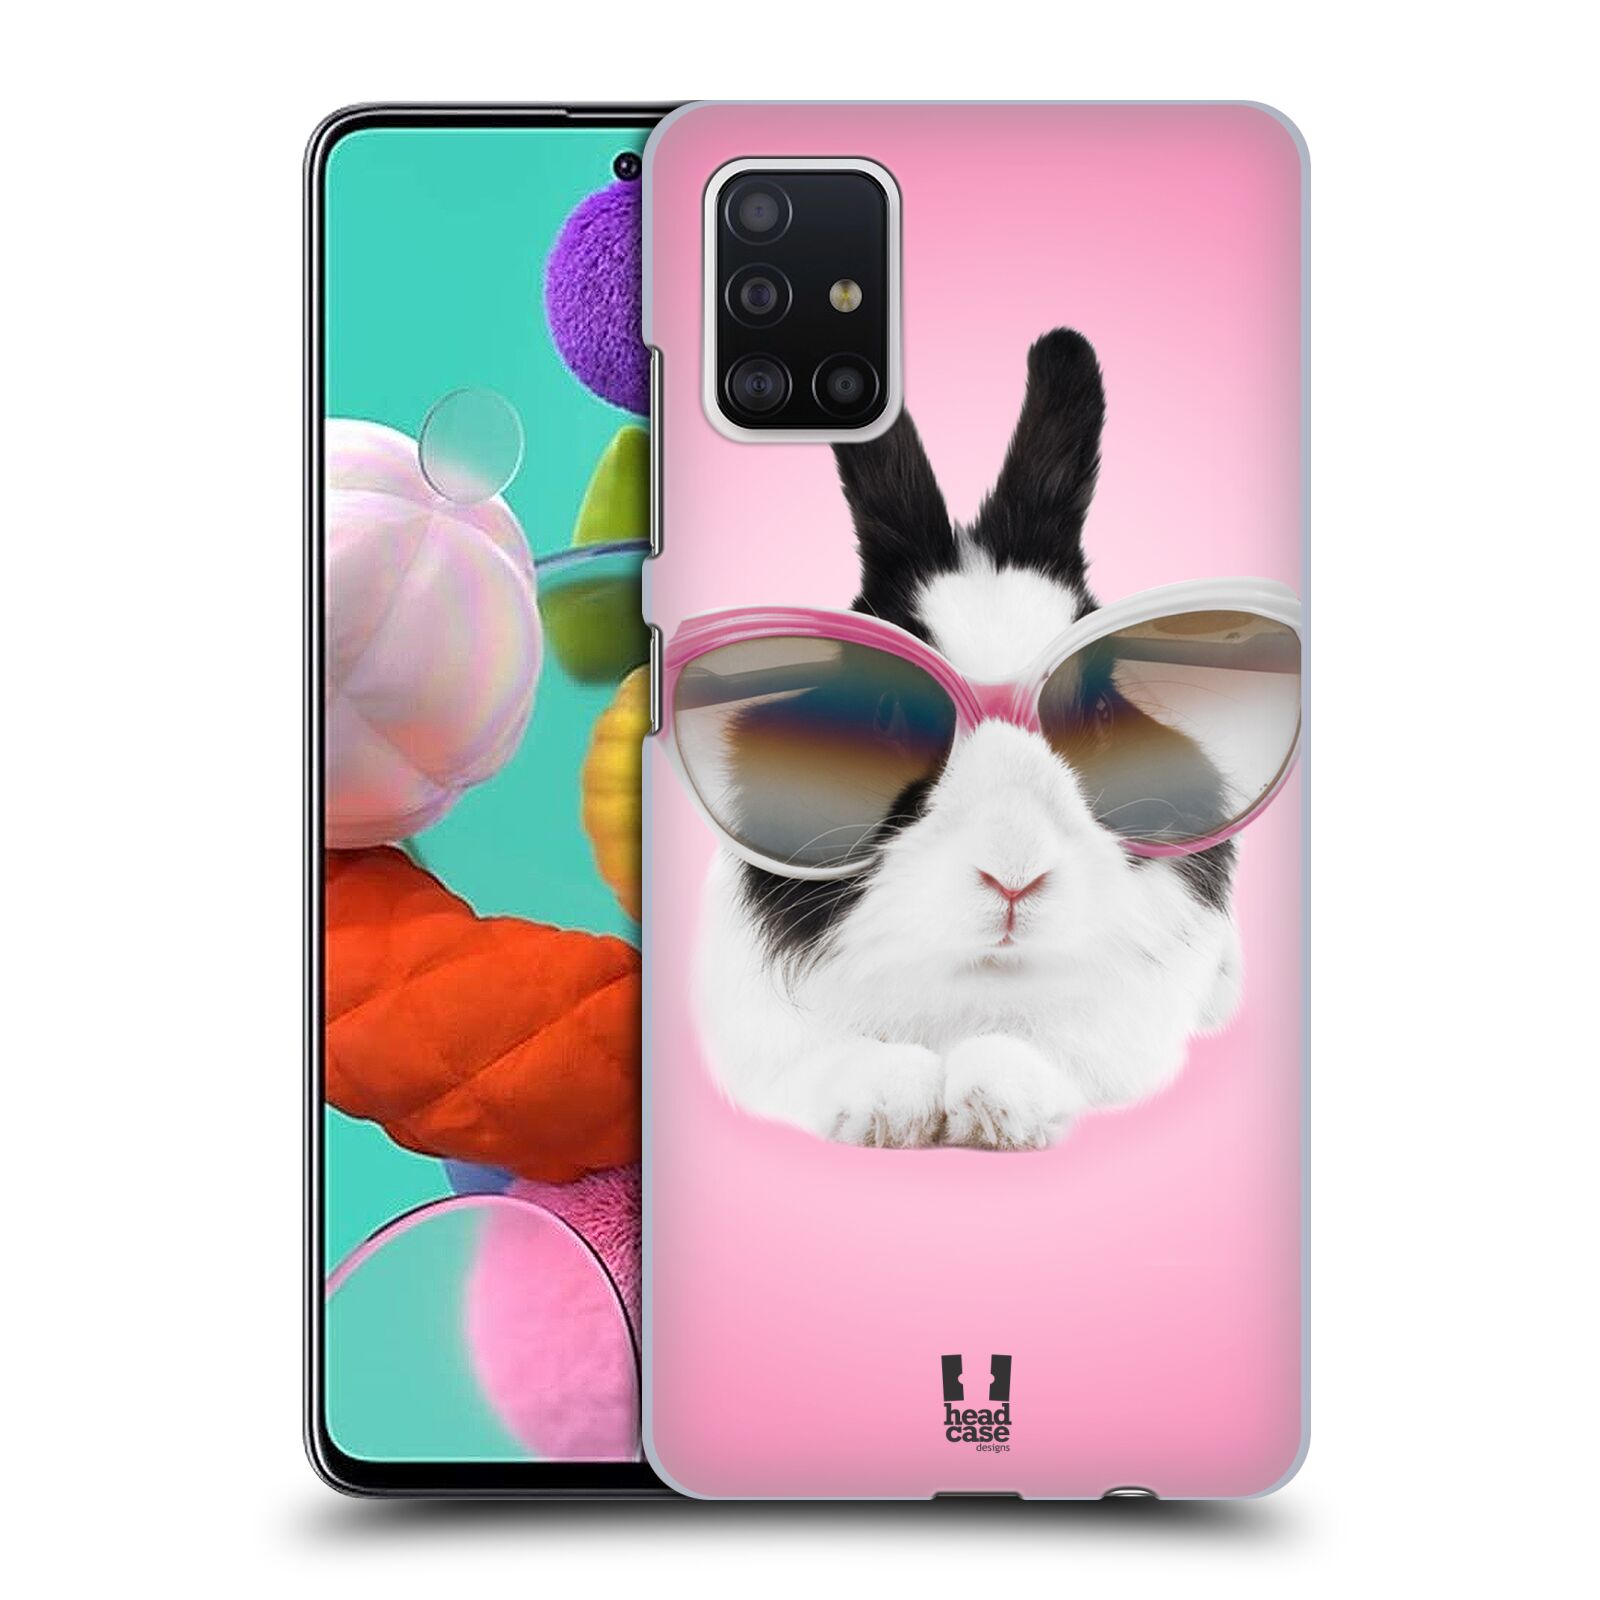 Pouzdro na mobil Samsung Galaxy A51 - HEAD CASE - vzor Legrační zvířátka roztomilý králíček s brýlemi růžová